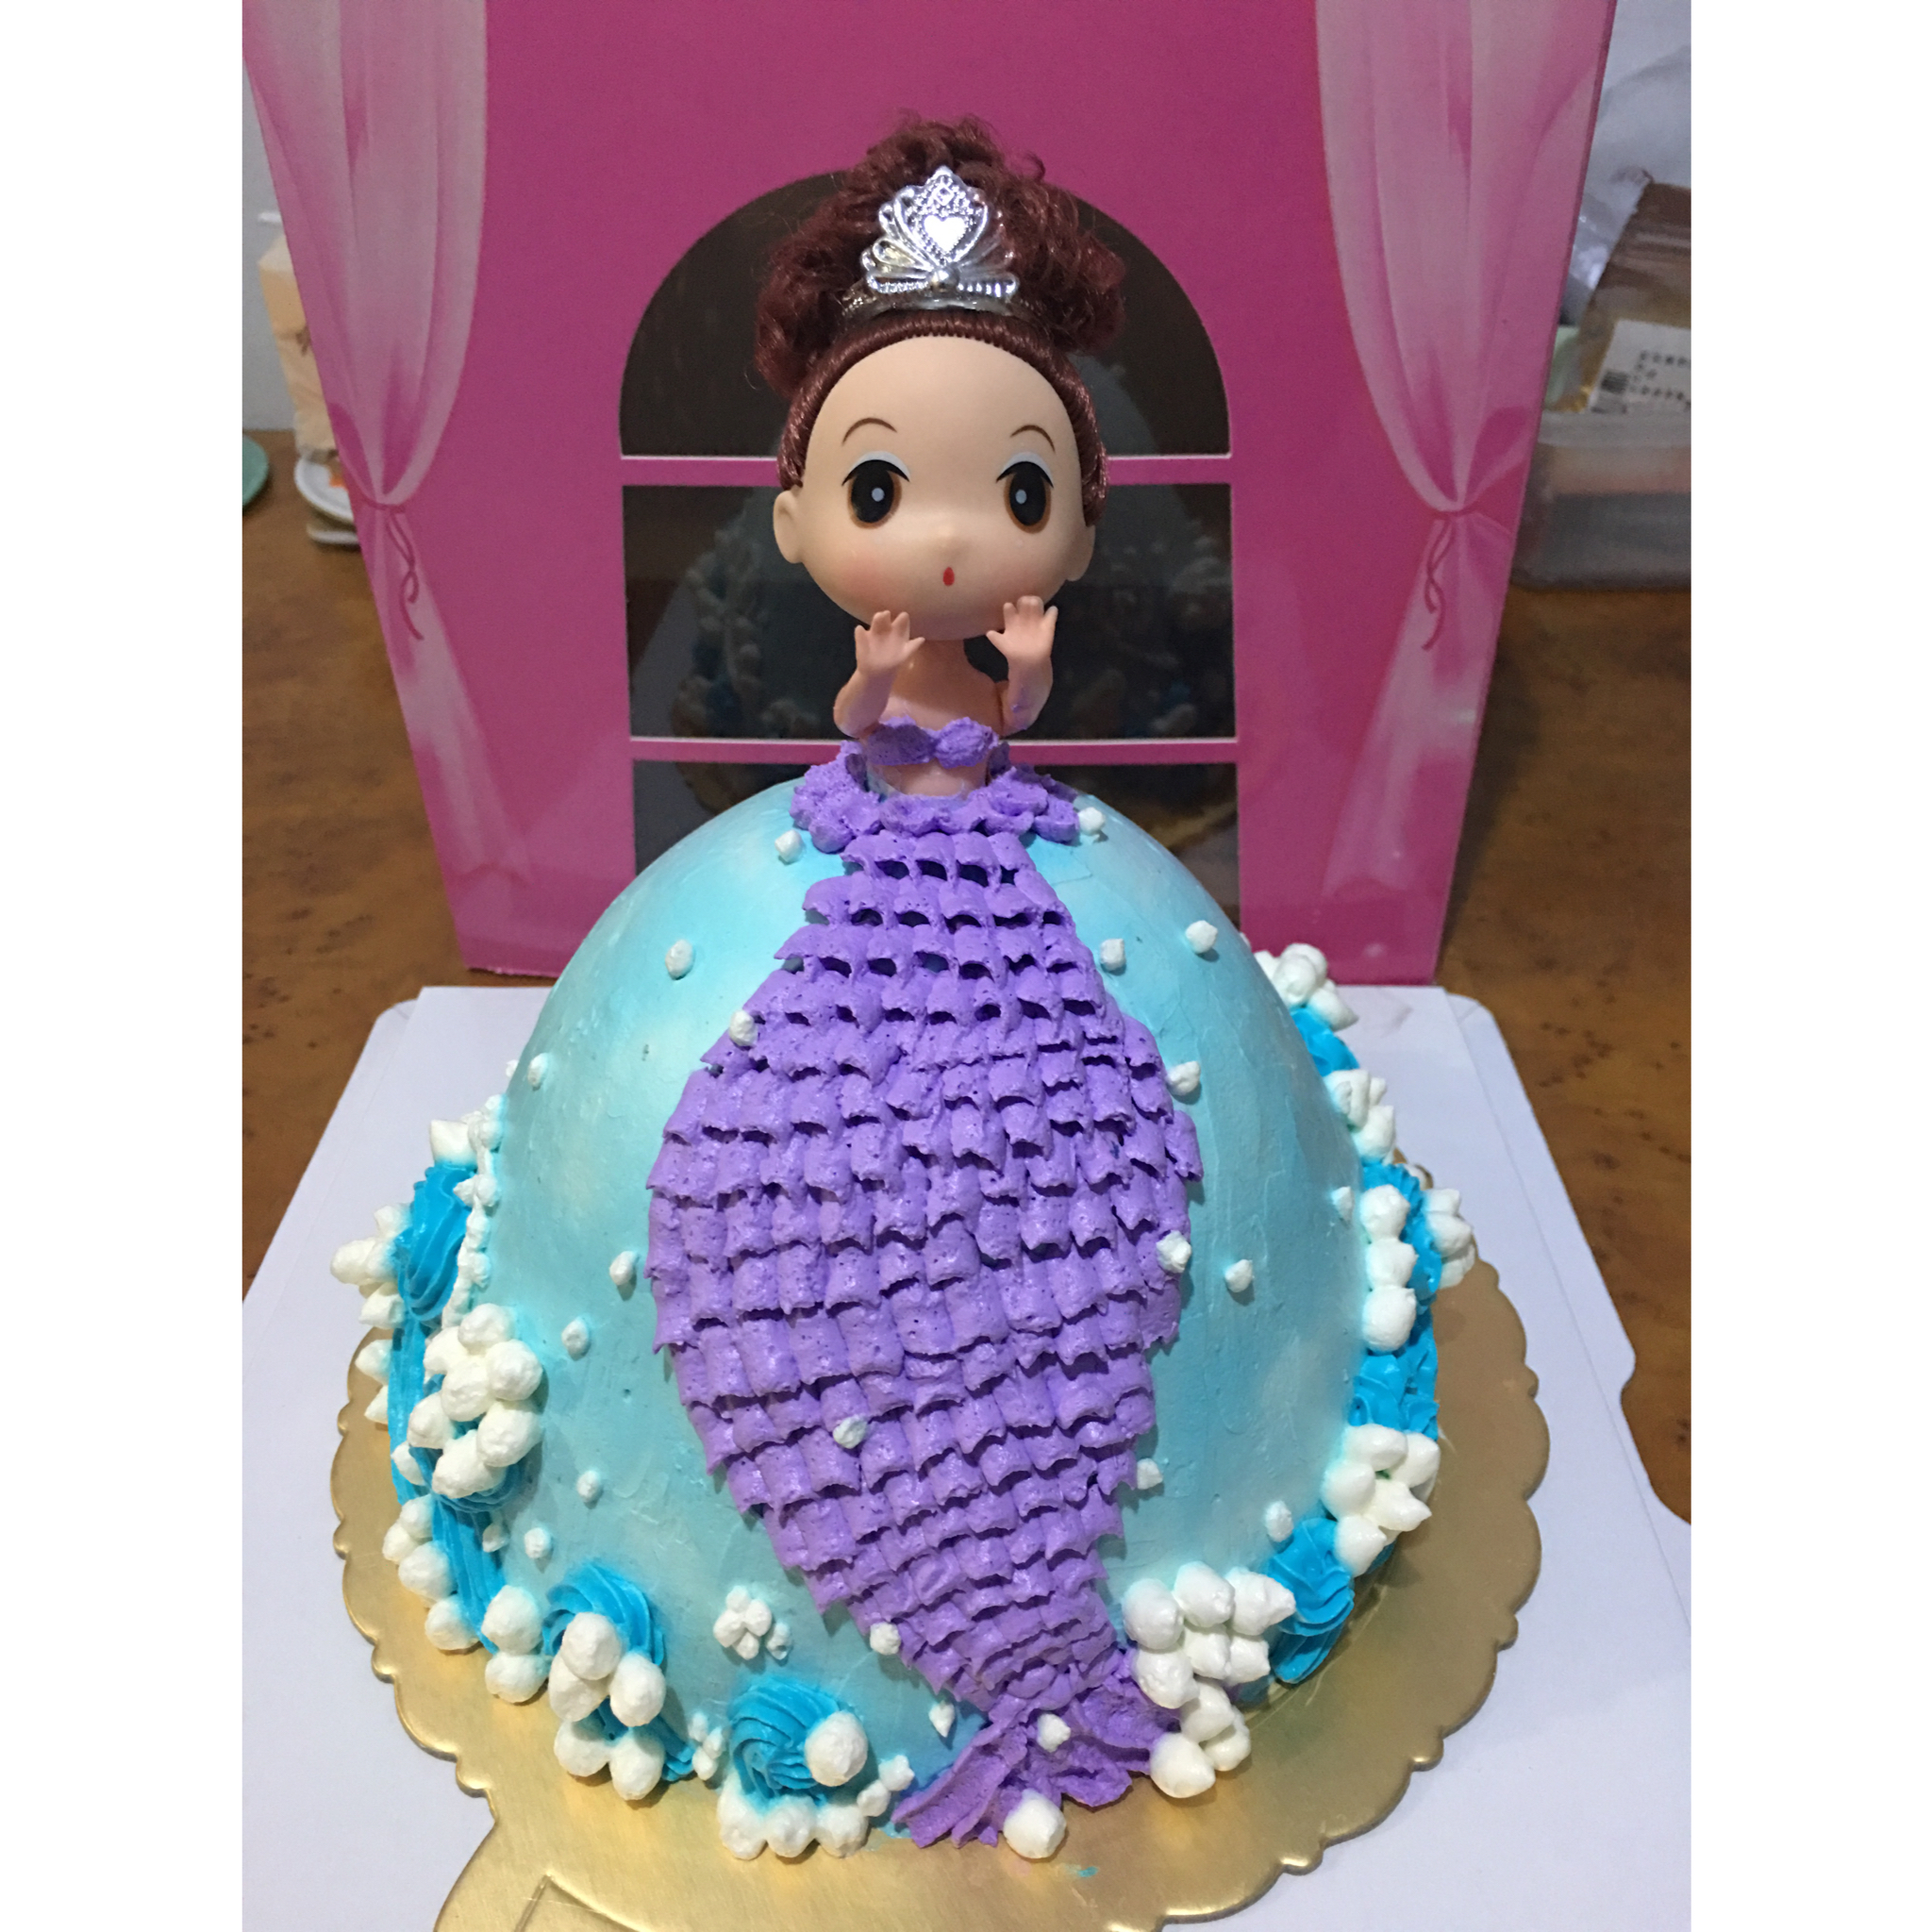 人鱼公主芭比娃娃奶油蛋糕